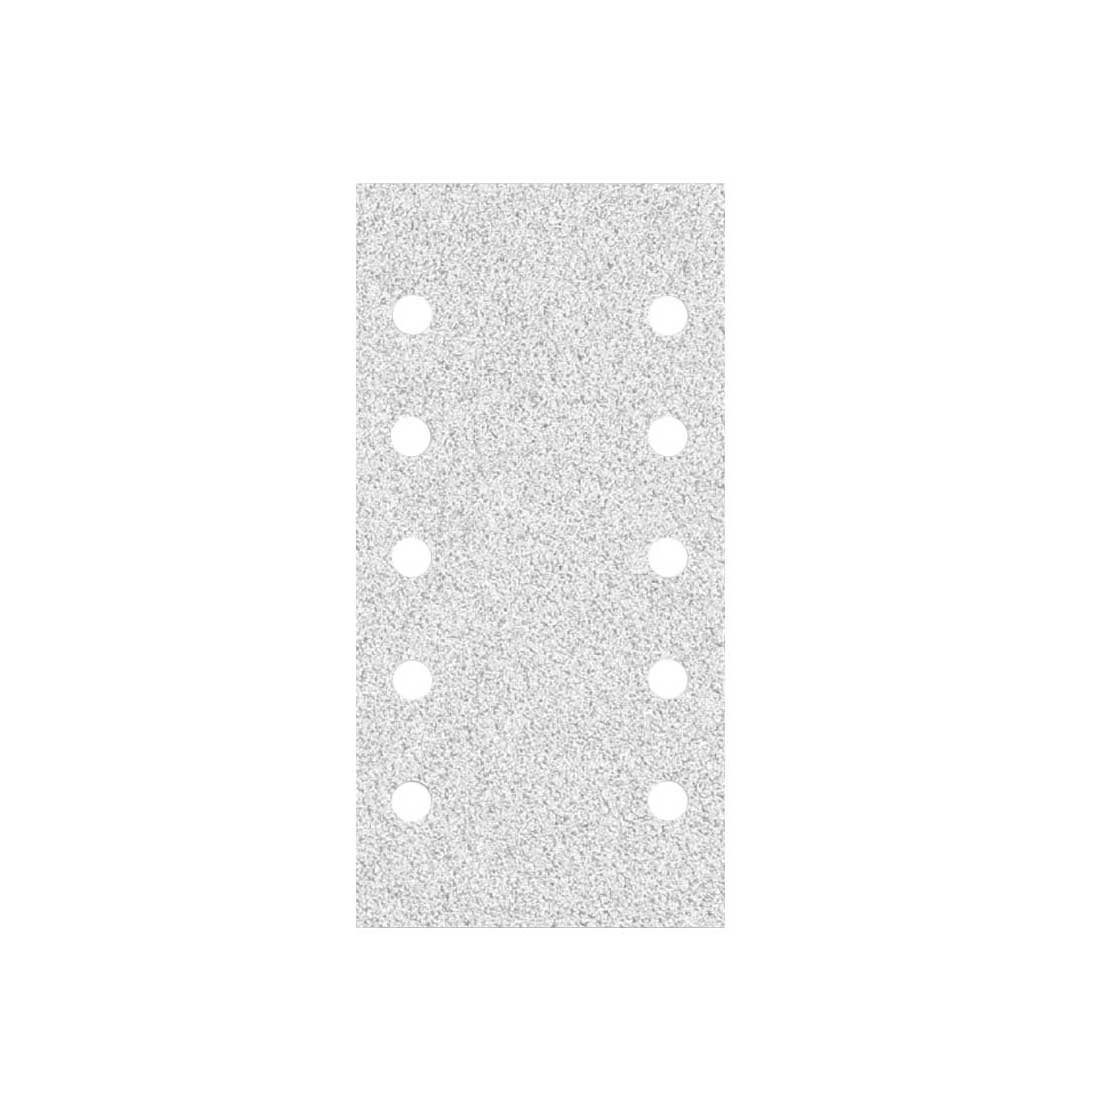 MioTools Schleifpapier 230 x 115 K100 10-Loch mm Schwingschleifer, Normalkorund, 50 Klett-Schleifblätter für Stk